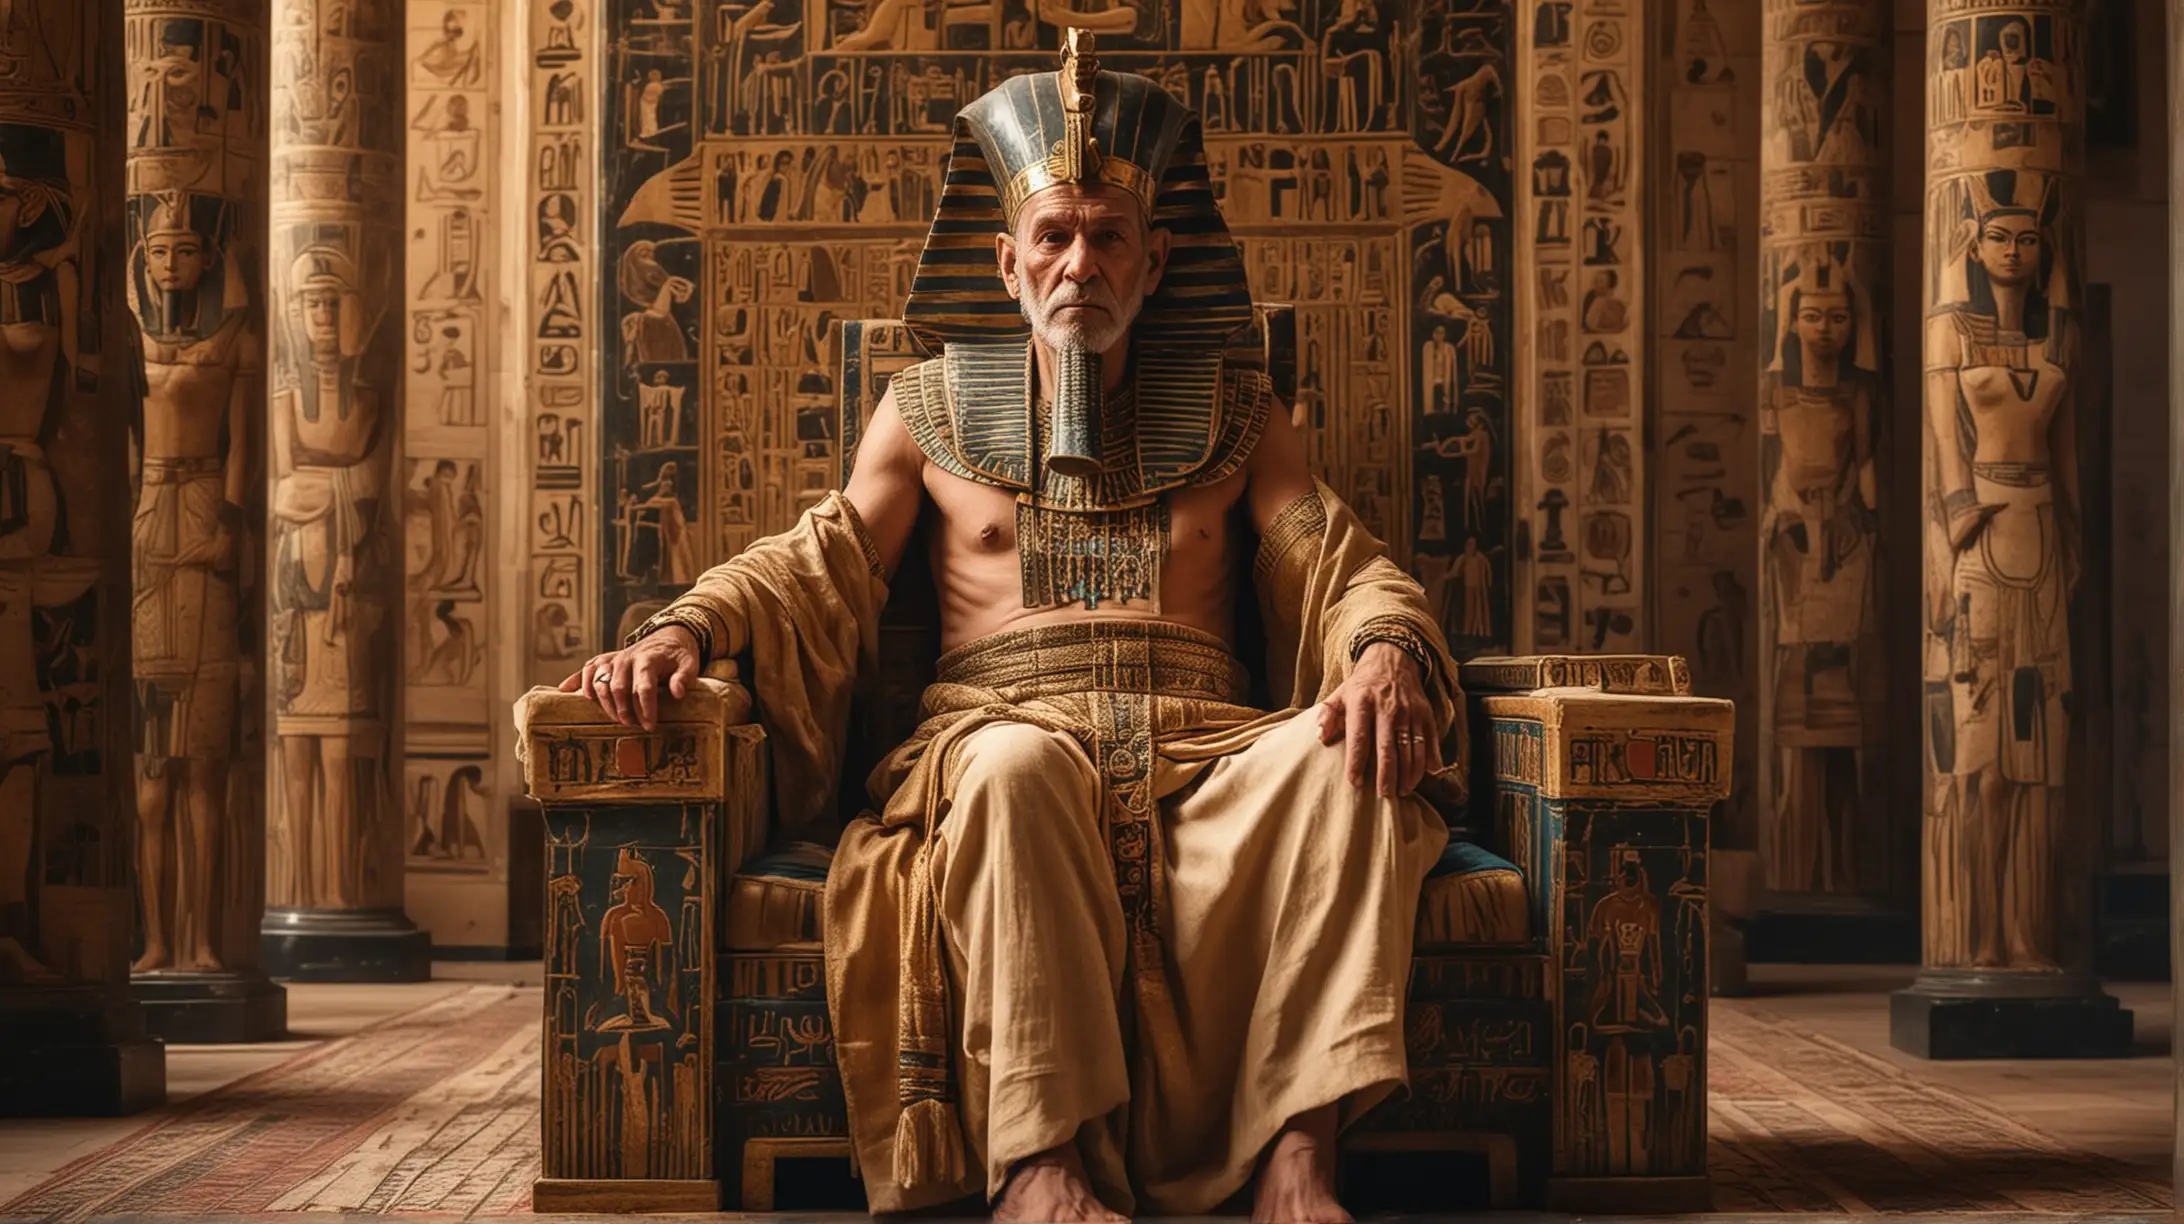 Древний Египет, старый фараон-мужчина в роскошной древнеегипетской одежде торжественно сидит на величественном богато украшенном троне во дворце и держит на руках маленькую девочку